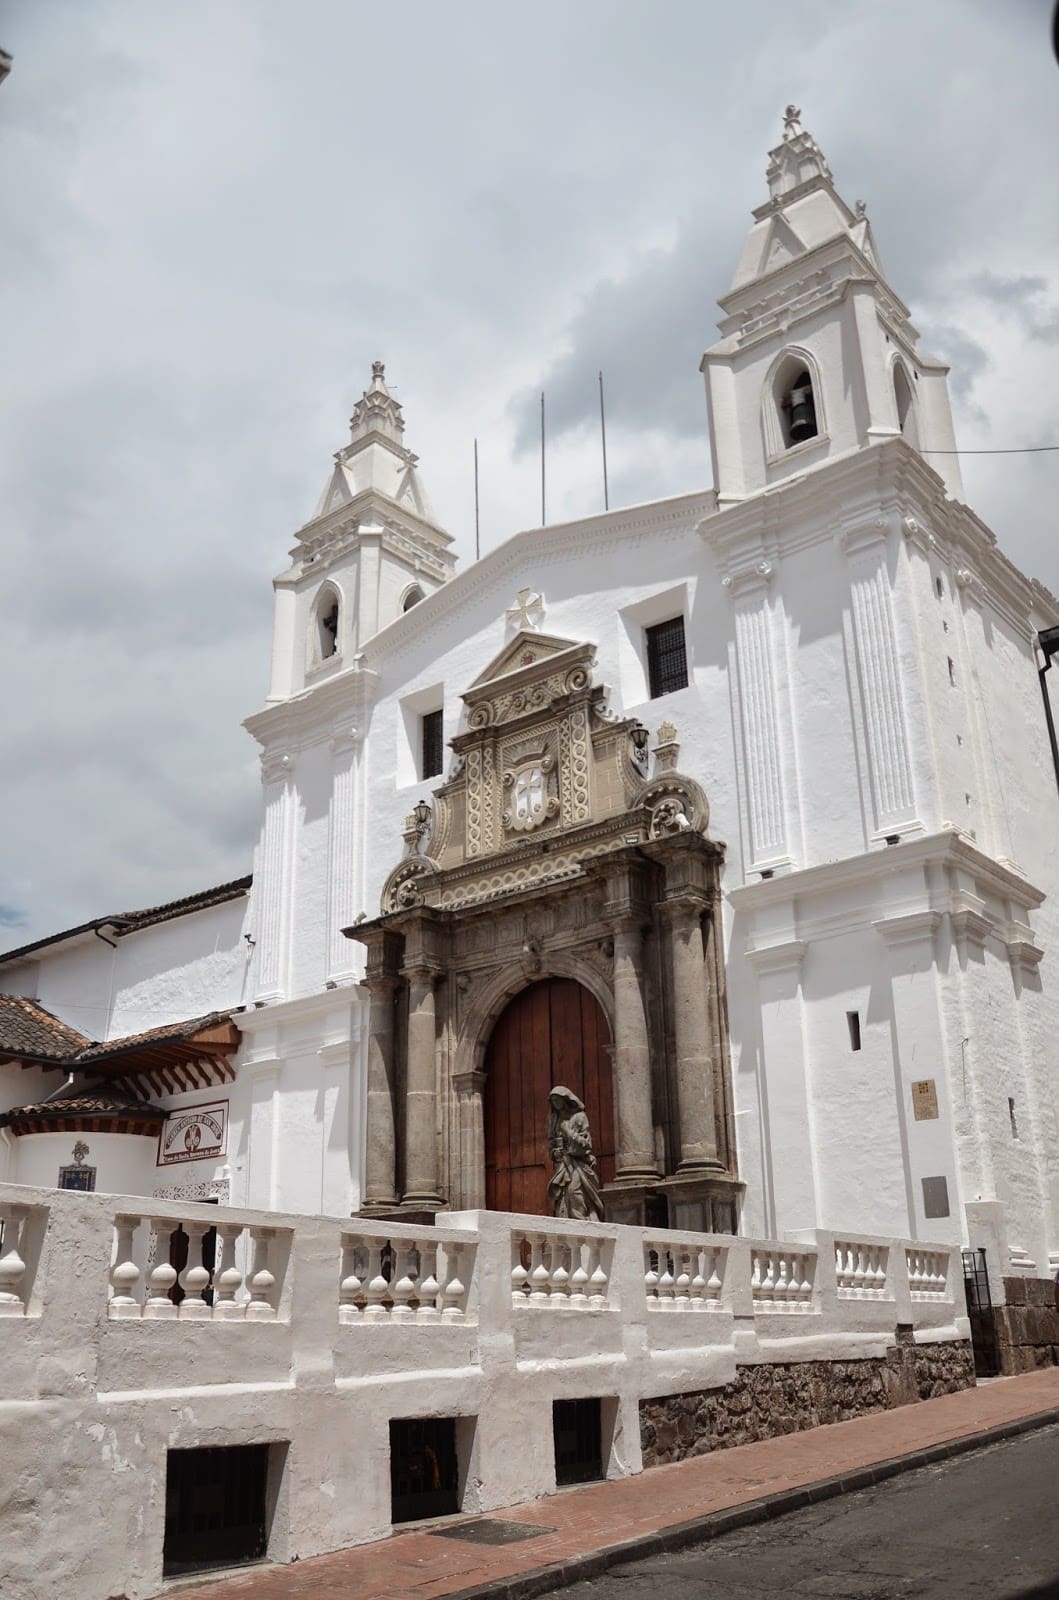 Carmen Alto Monastery in Quito, Ecuador